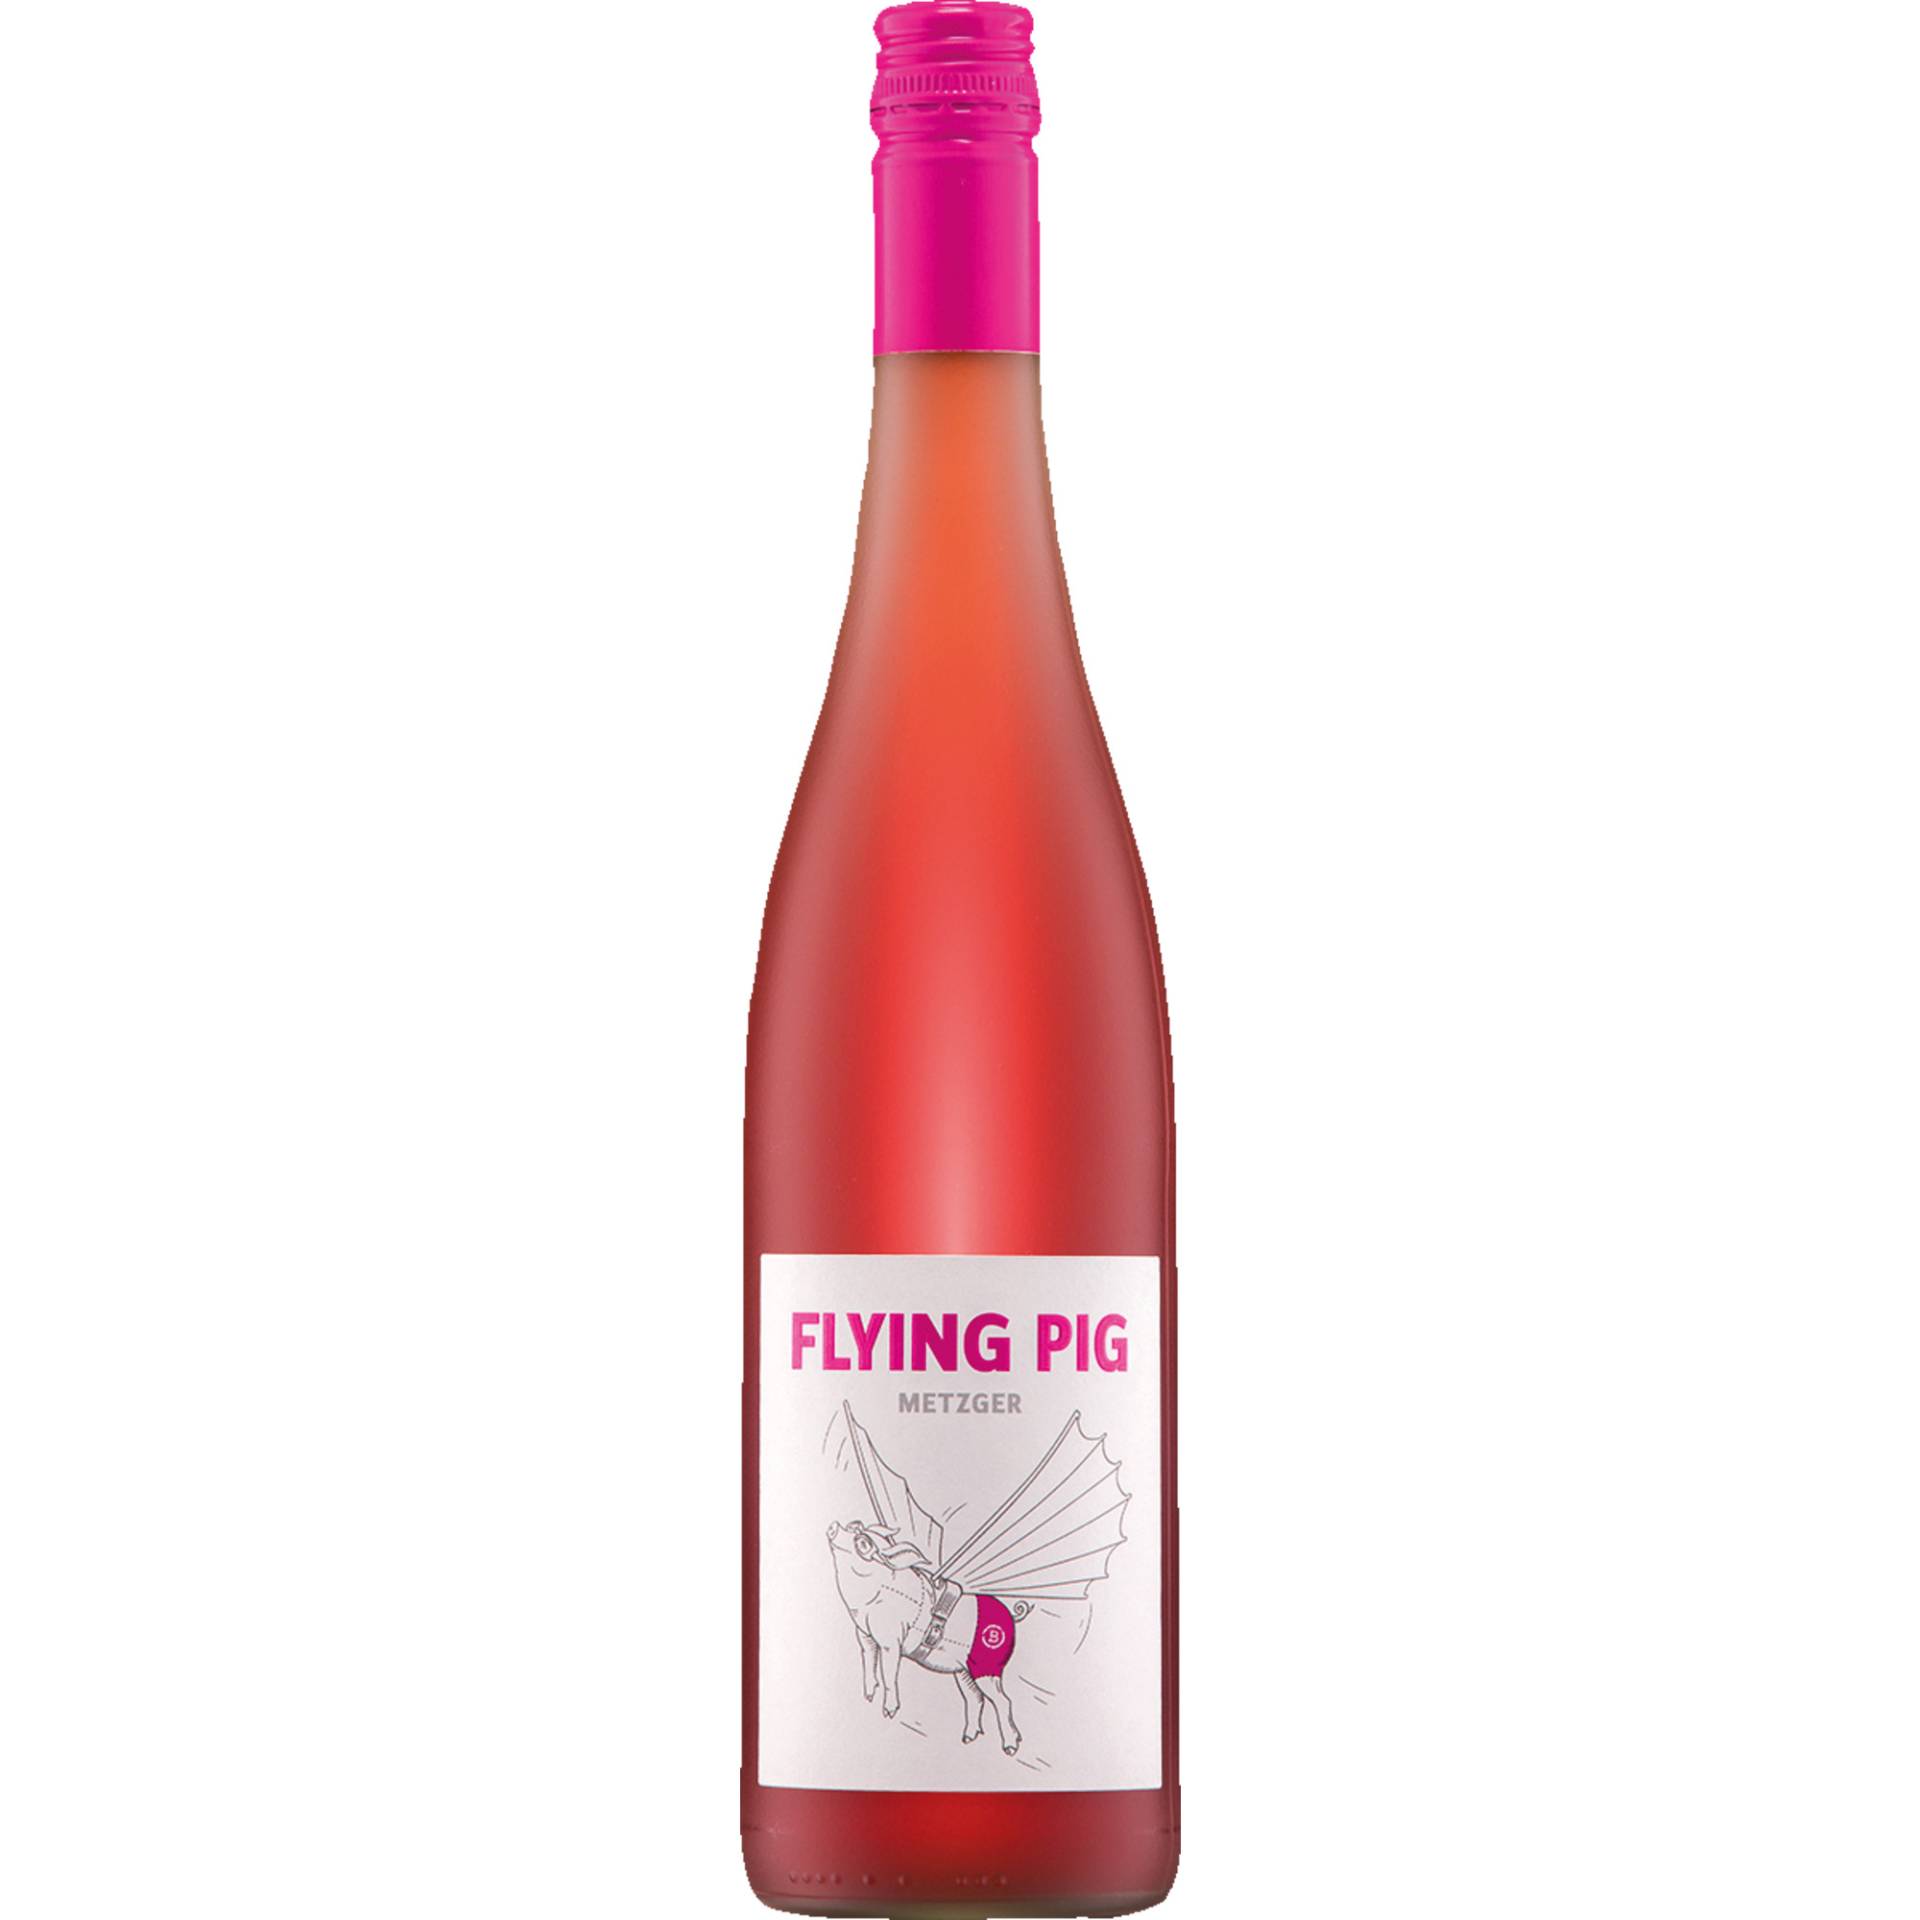 Flying Pig Rosé, Perlwein mit zugesetzter Kohlensäure, Deutscher Tafelwein, Perlwein / Secco von Weingut Uli Metzger, D - 67269 Grünstadt